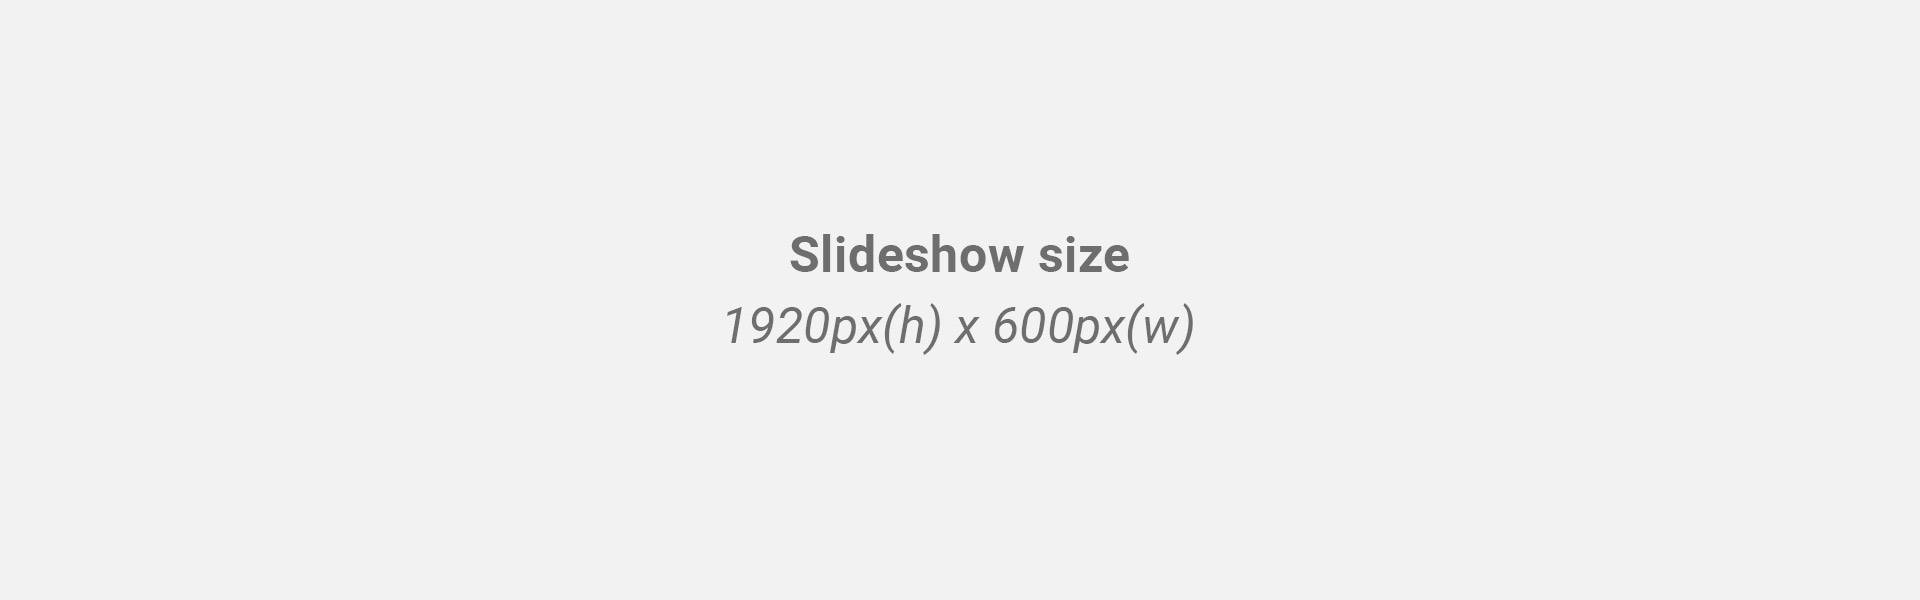 Slideshow size: 1920px(w) x 600px(h)